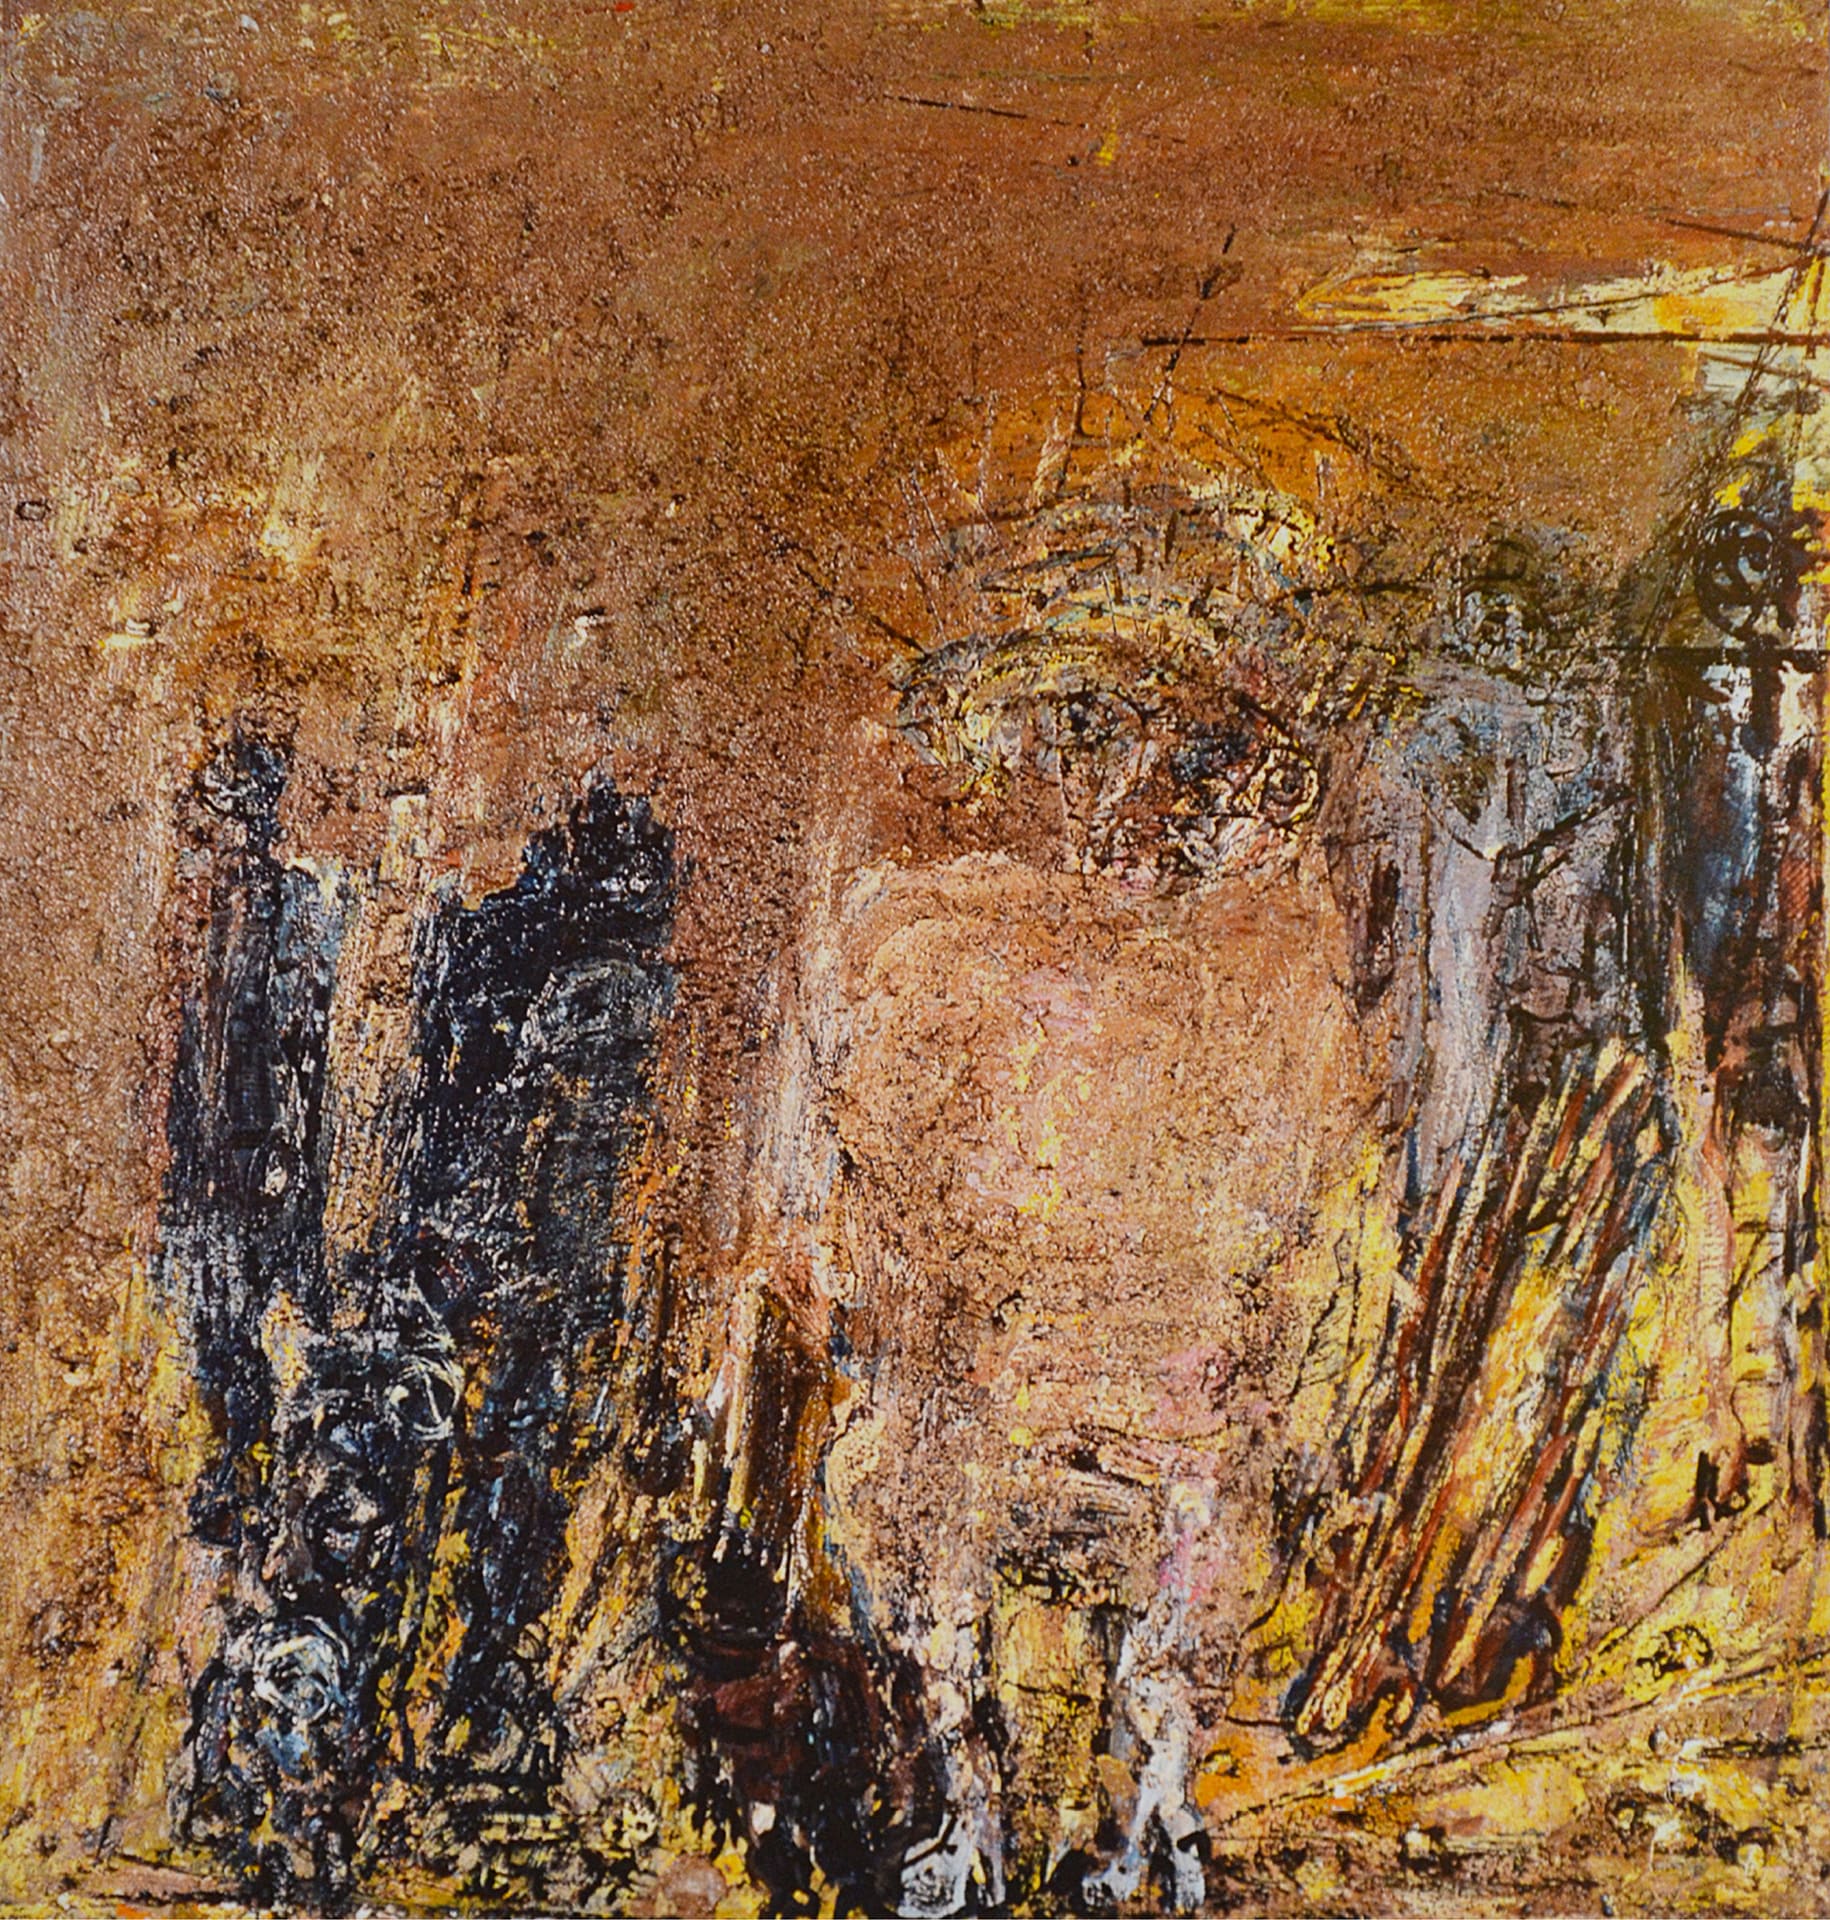 Nel territorio - 1979 - olio su tela - cm 49 x 52,5